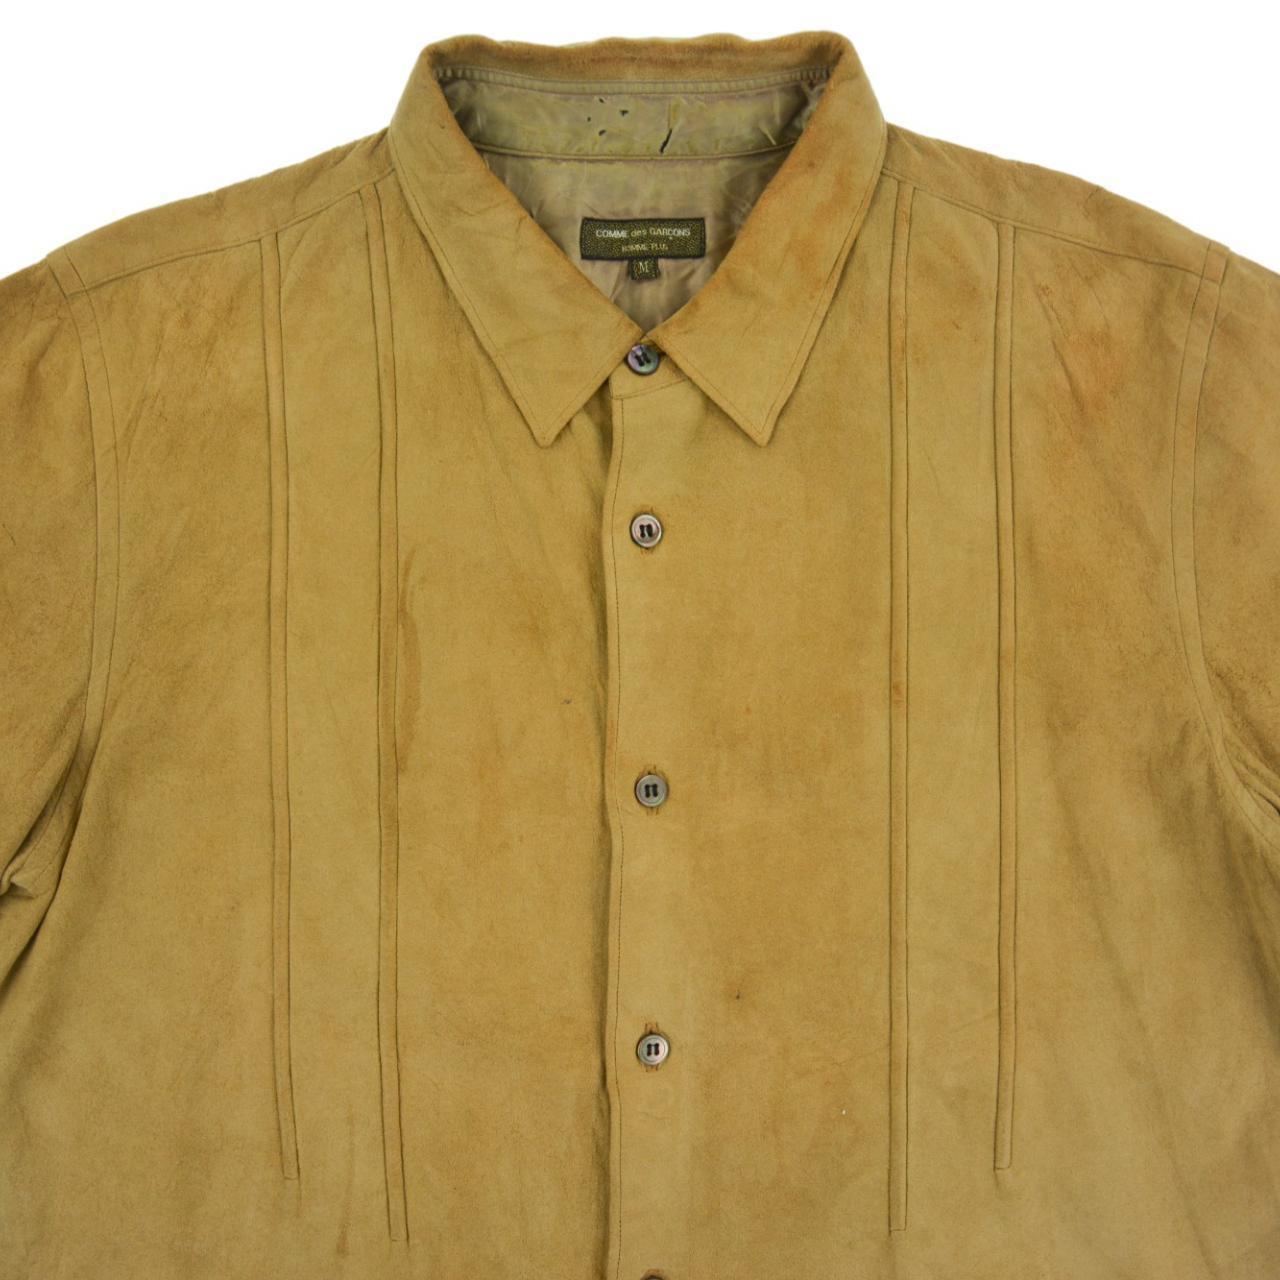 Vintage Comme des Garcons Suede Shirt Size S - Known Source